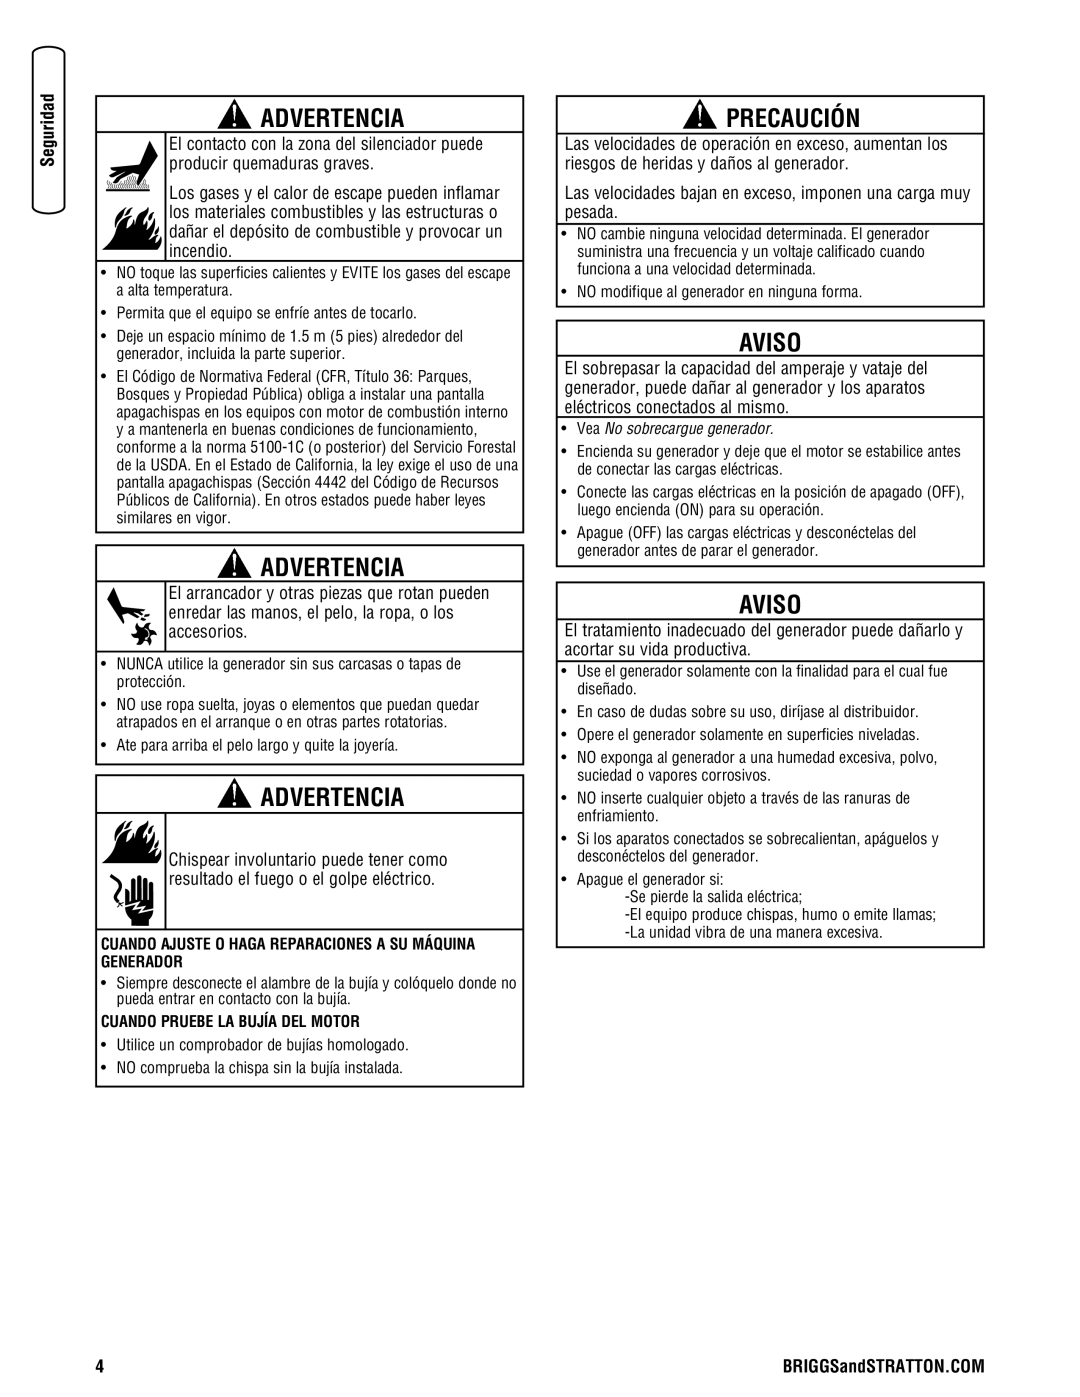 Briggs & Stratton 030248-0 manual Precaución, Advertencia, Aviso 